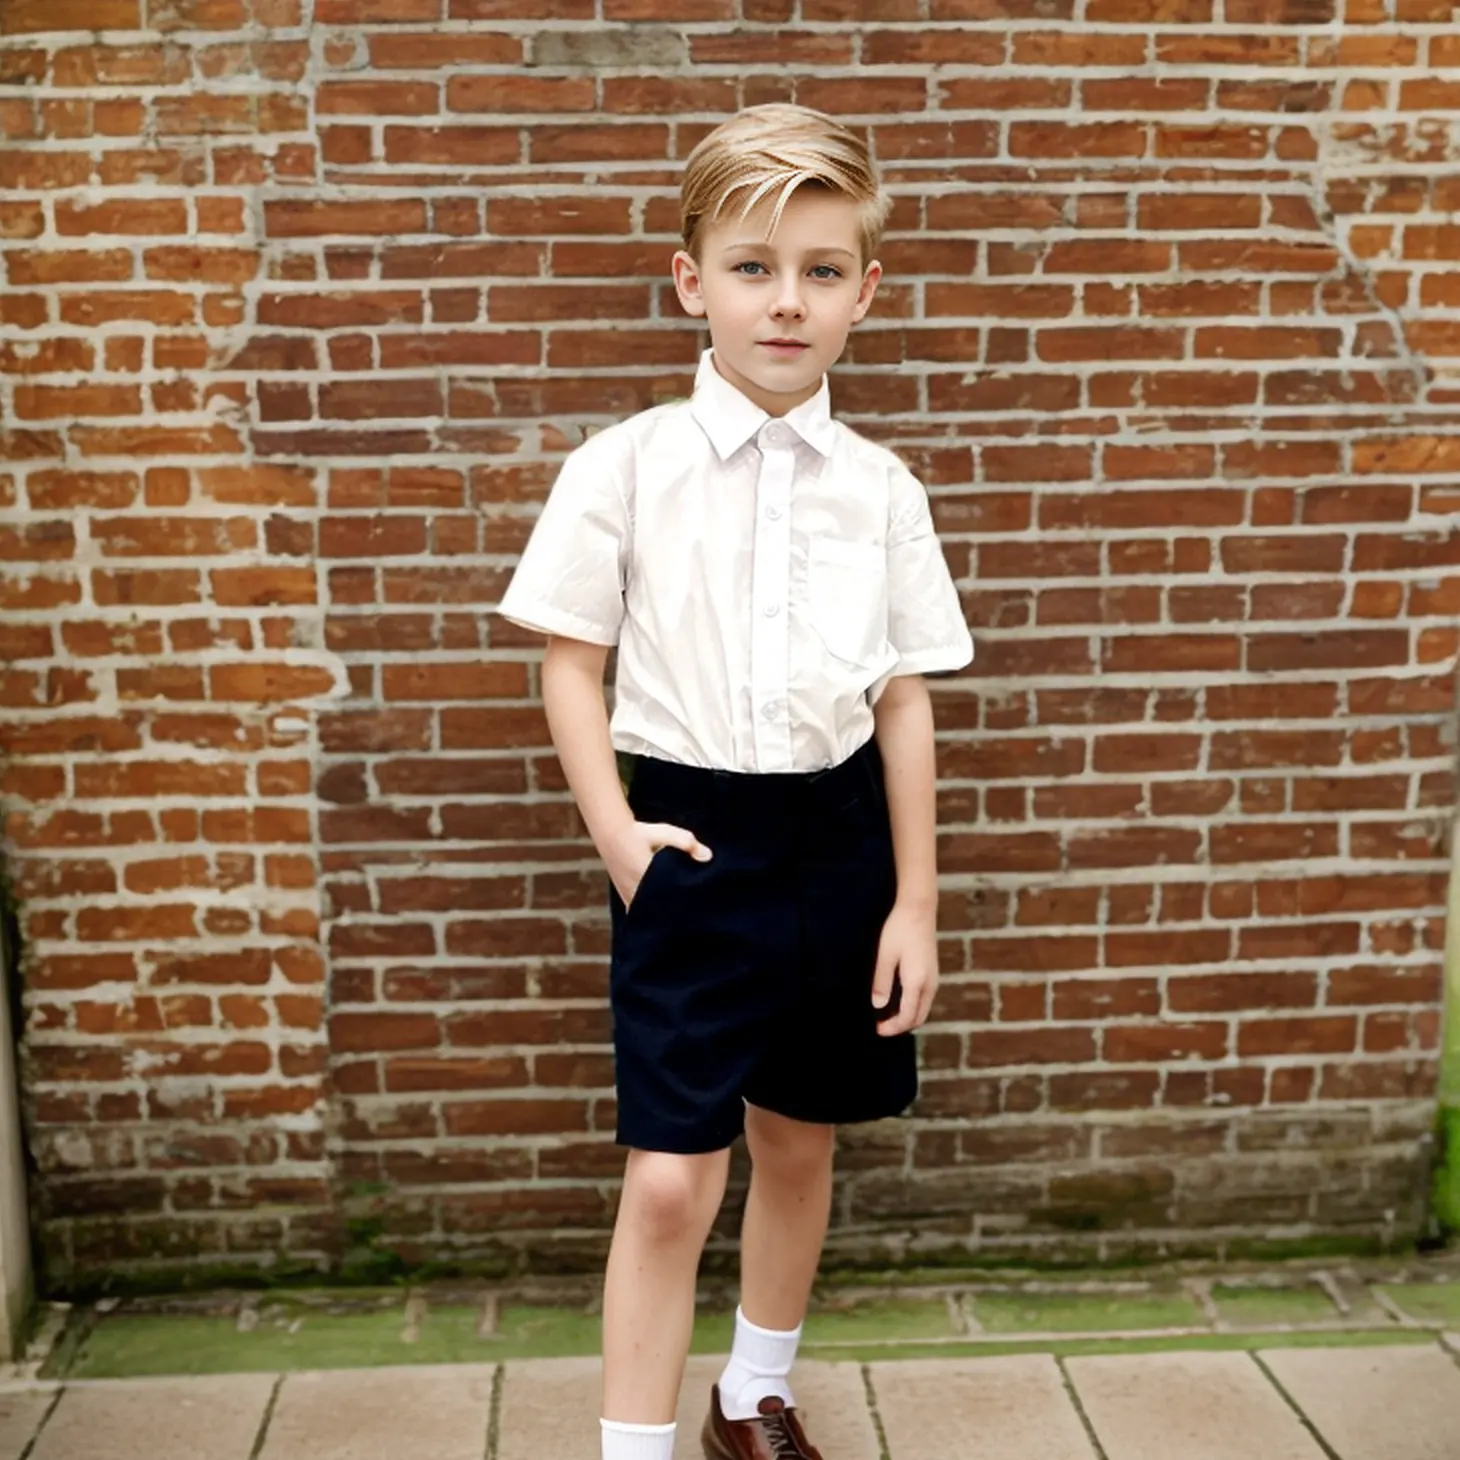 Оптовая продажа, качественная цветная рубашка для мальчиков с коротким рукавом, Белая школьная форма из полихлопка, рубашки